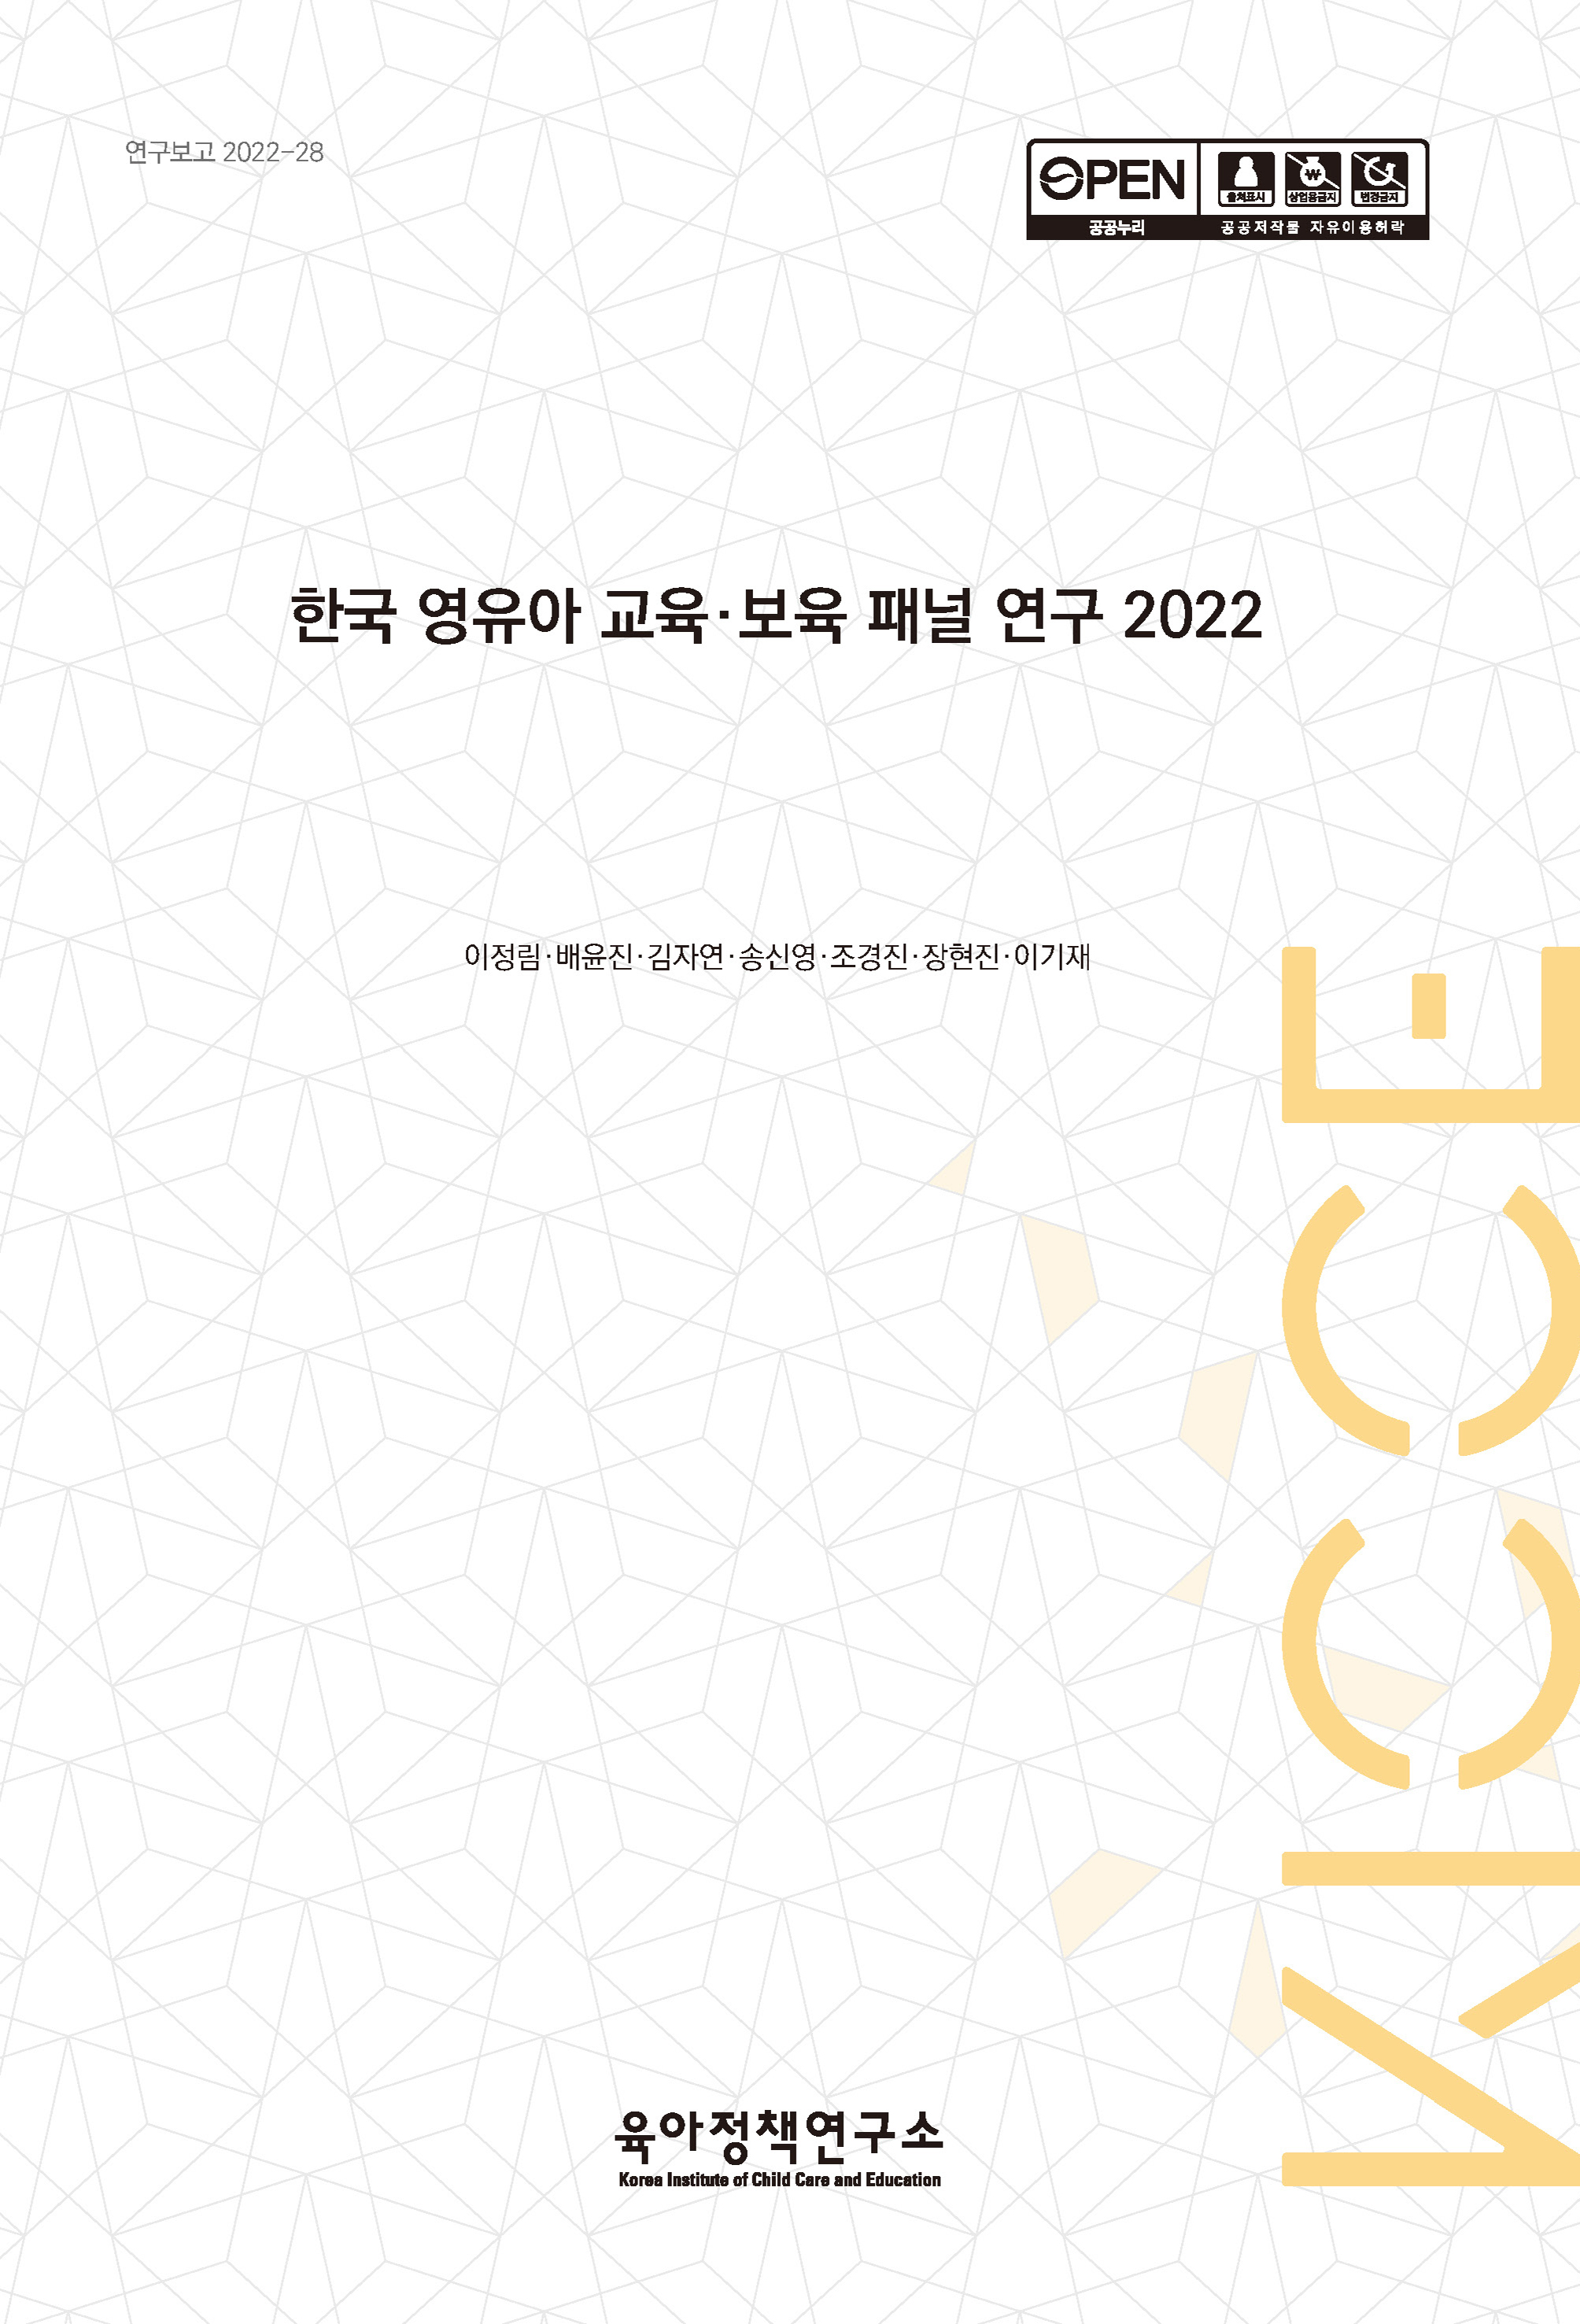 한국 영유아 교육·보육 패널 연구 2022 관련 이미지 입니다.